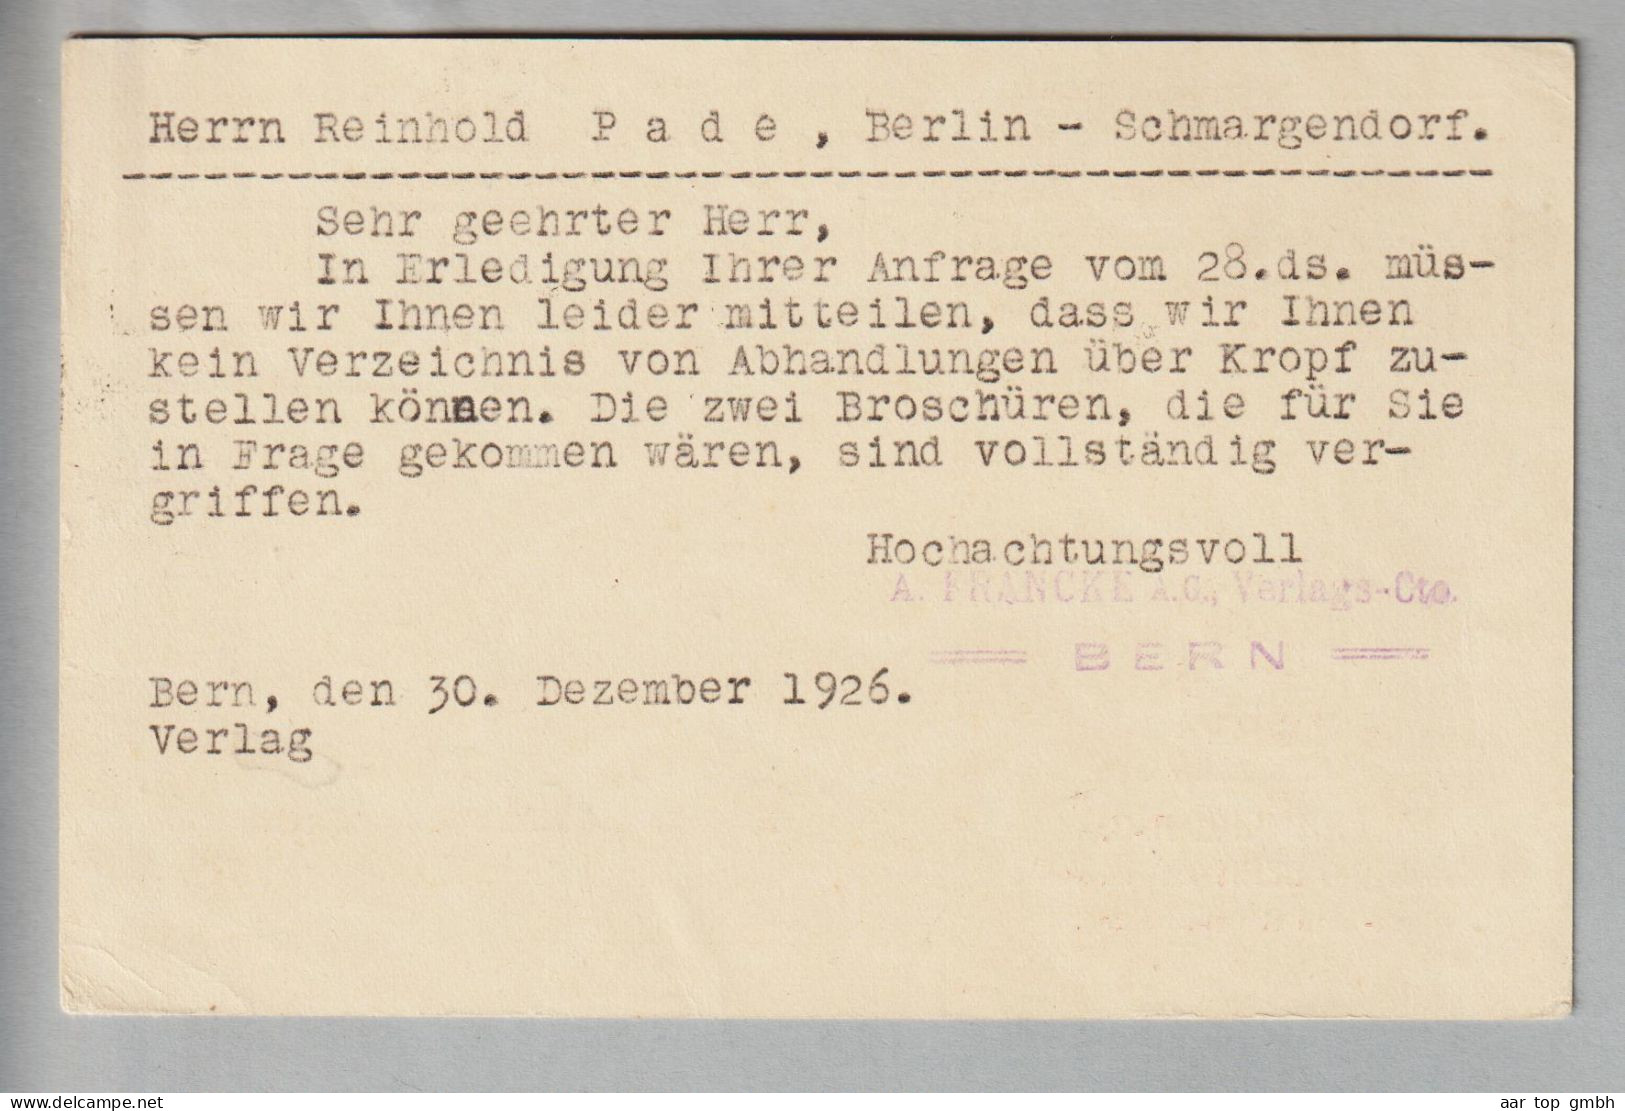 CH Ganzsache Bildpostkarte 20Rp. 1926-12-30 Bern1 Mit Privatzudruck A.Francke AG - Ganzsachen